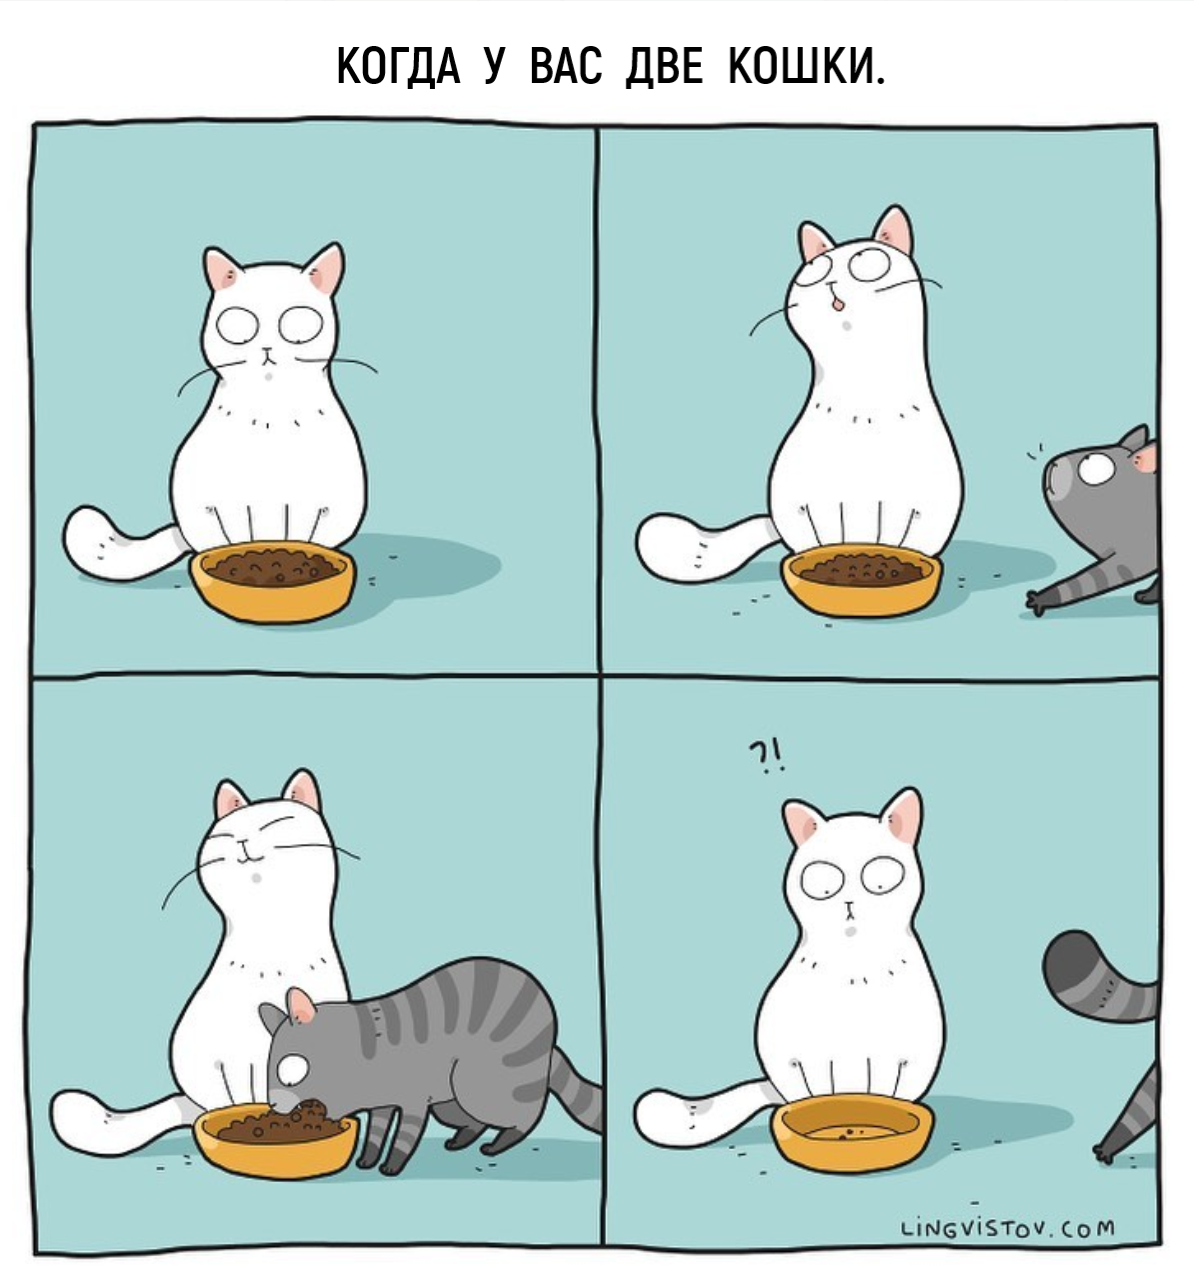 Котики бывают двух видов